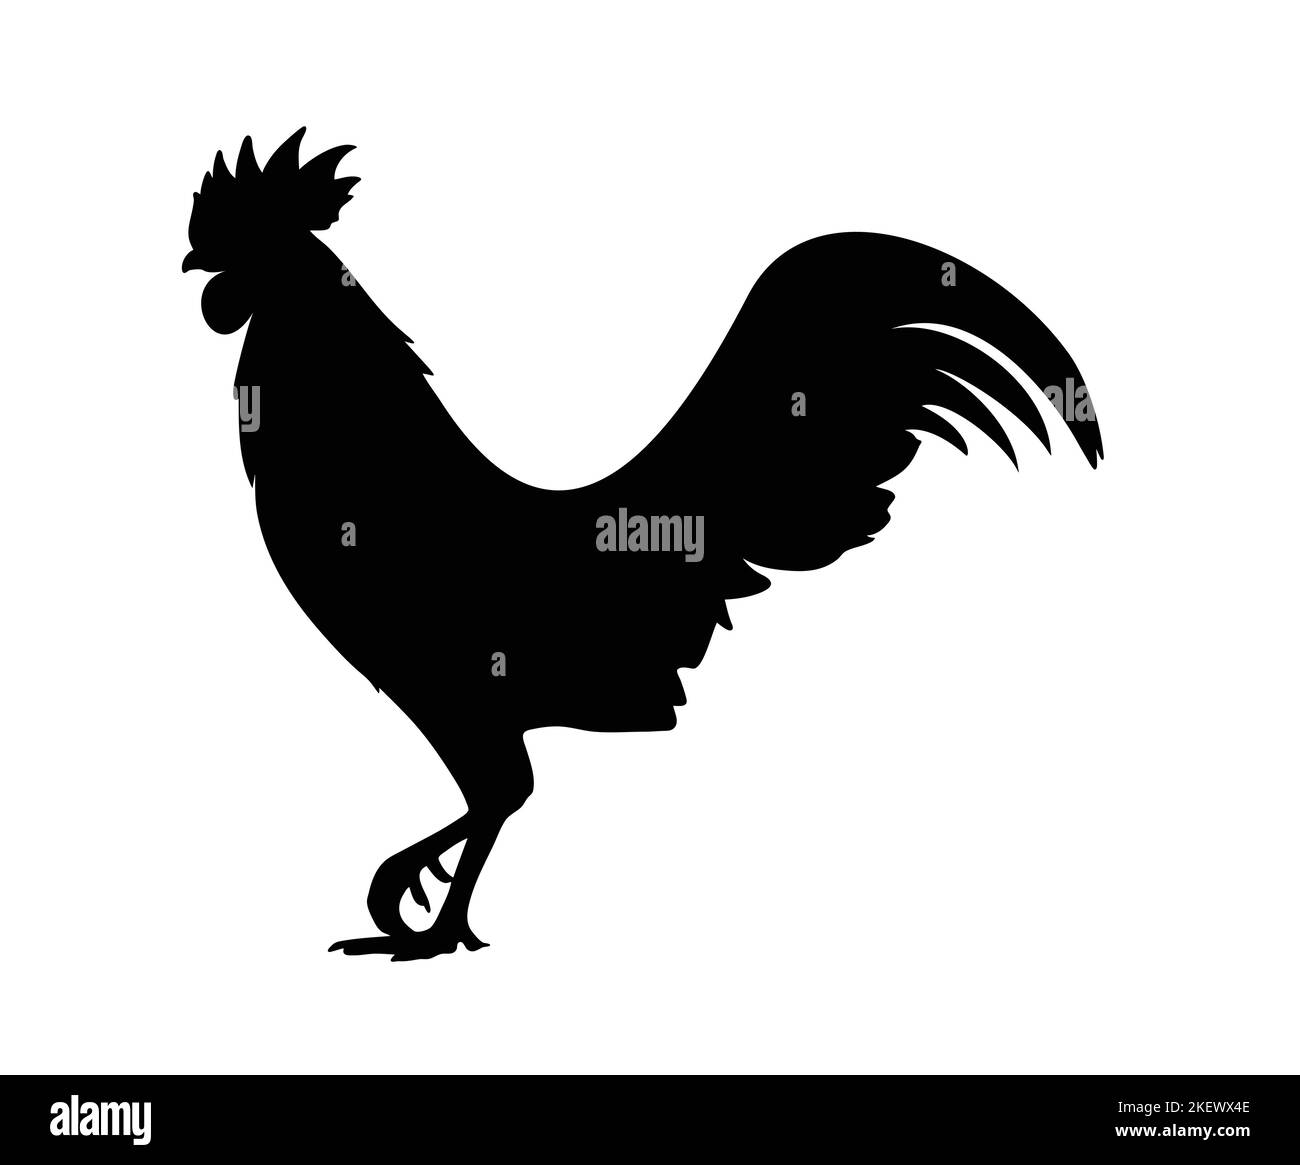 Vektorgrafik. Schwarze Silhouette eines Hahns, der auf einem Bein steht. Isoliert auf weißem Hintergrund. Stock Vektor